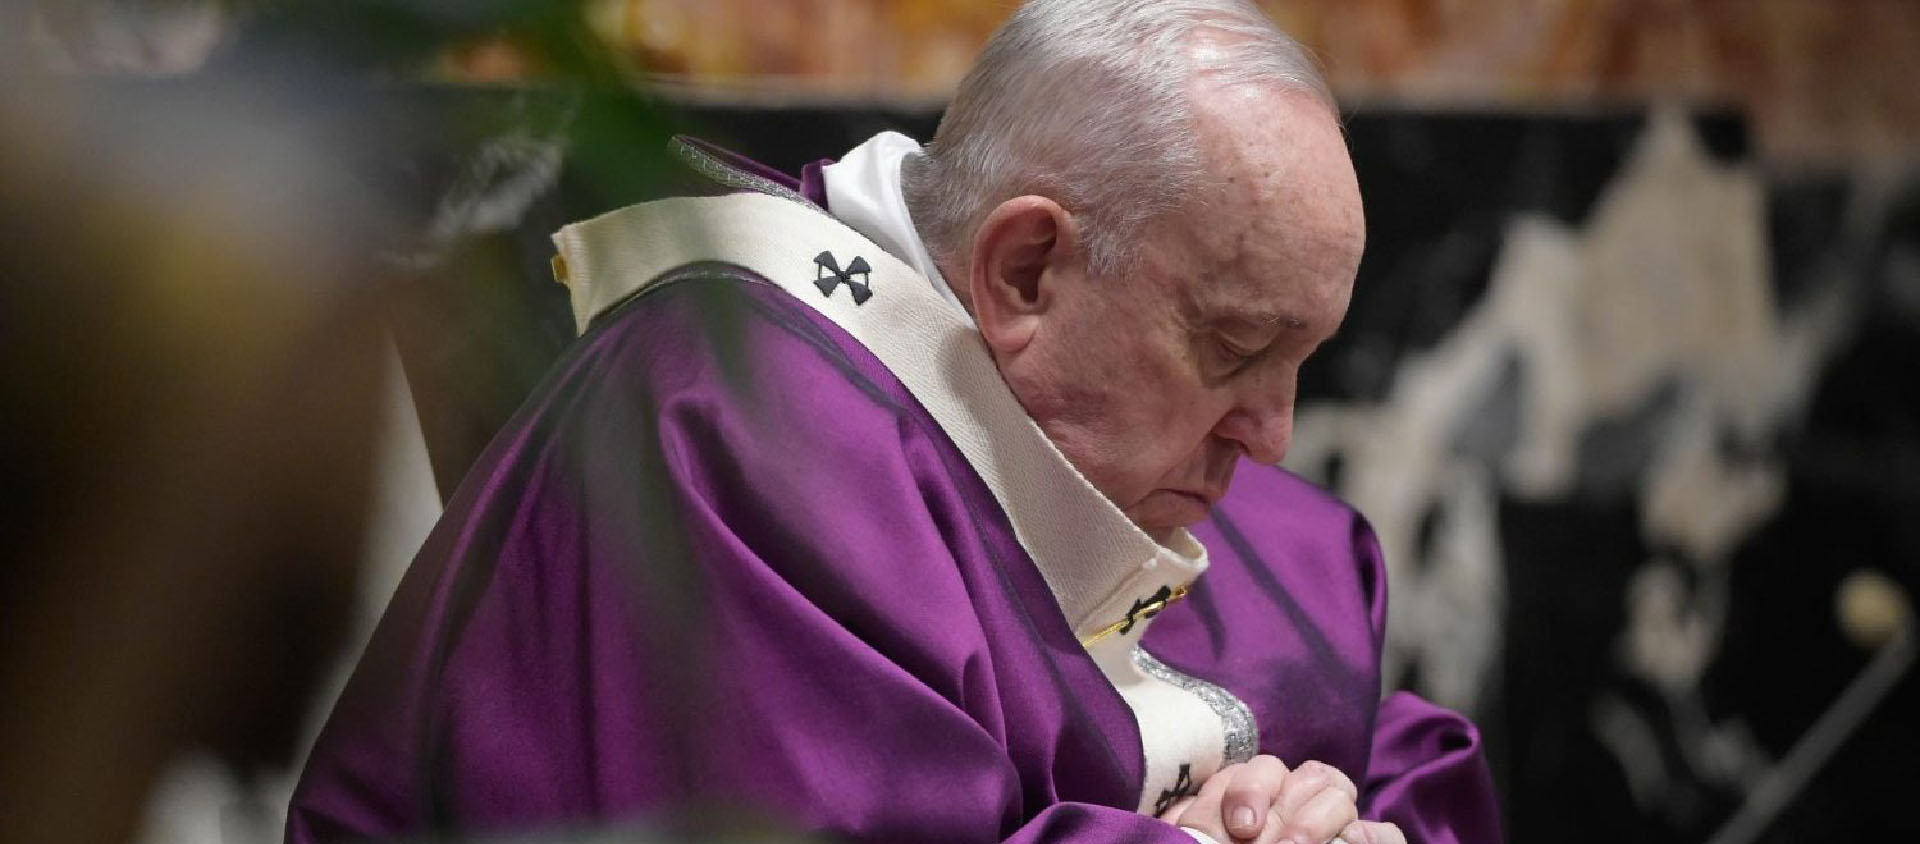 Le pape François a dû annuler une audience à cause d'un gros rhume | photo d'illustration © Vatican Media